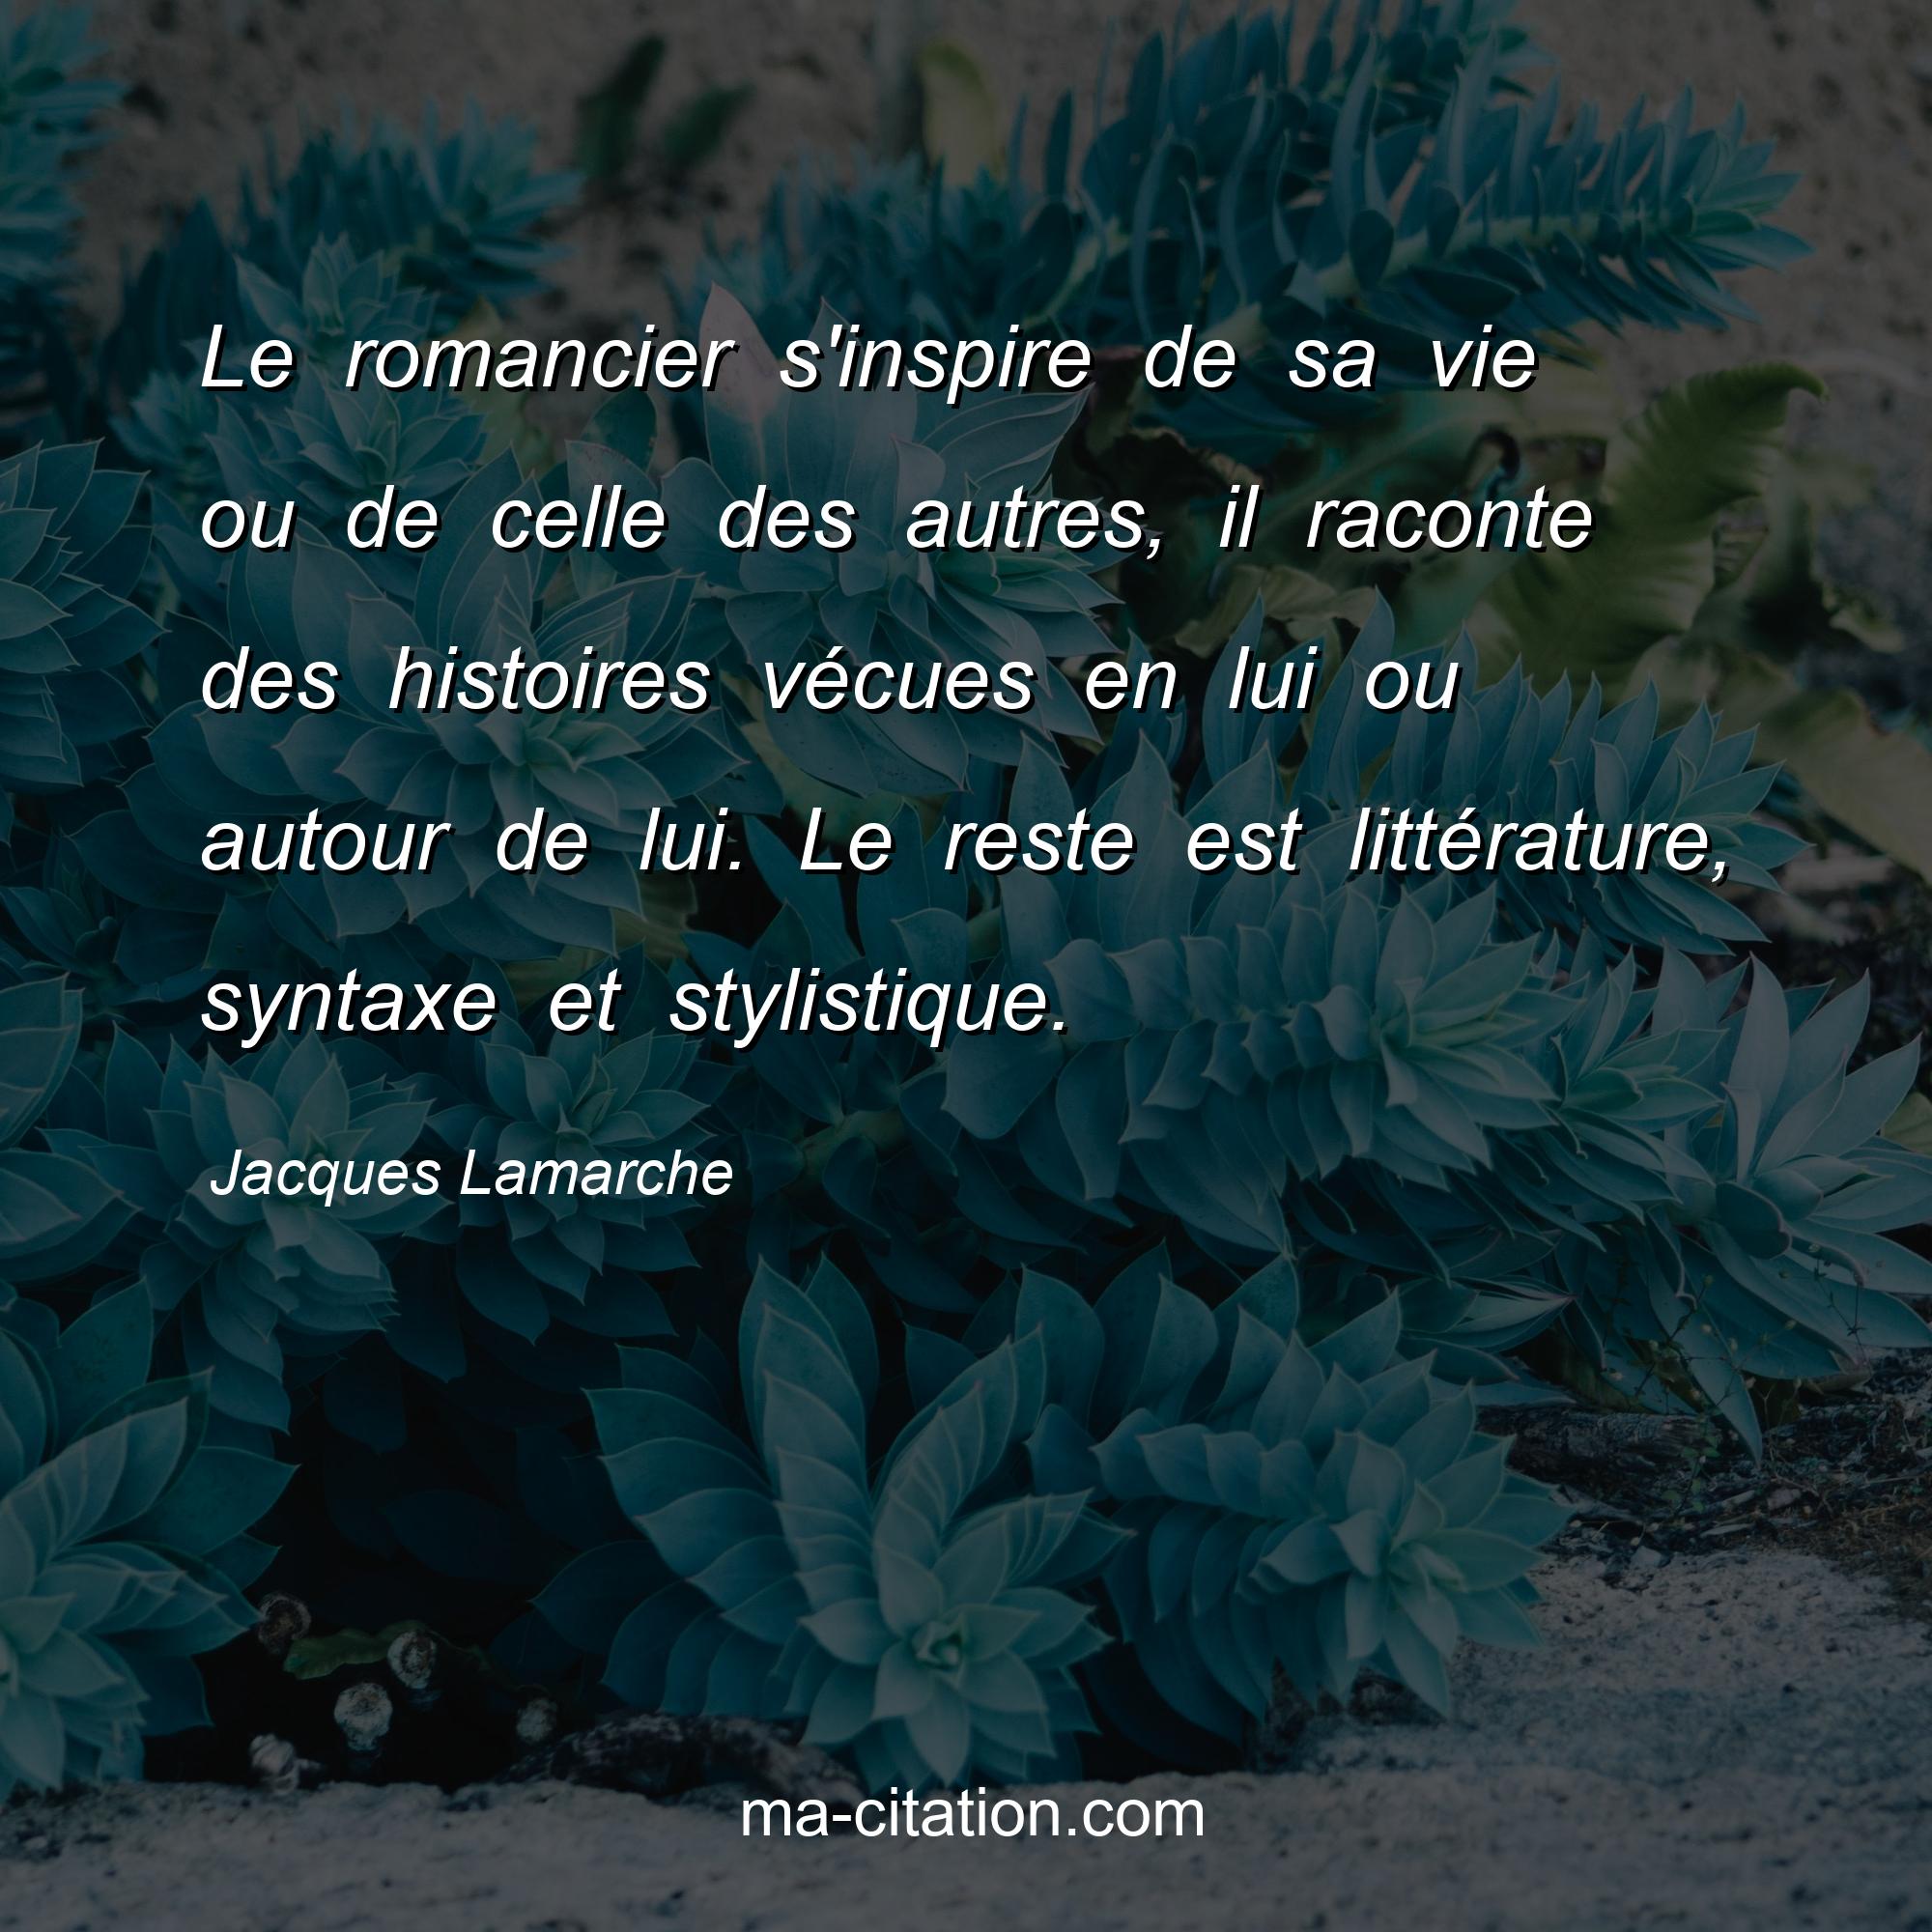 Jacques Lamarche : Le romancier s'inspire de sa vie ou de celle des autres, il raconte des histoires vécues en lui ou autour de lui. Le reste est littérature, syntaxe et stylistique.